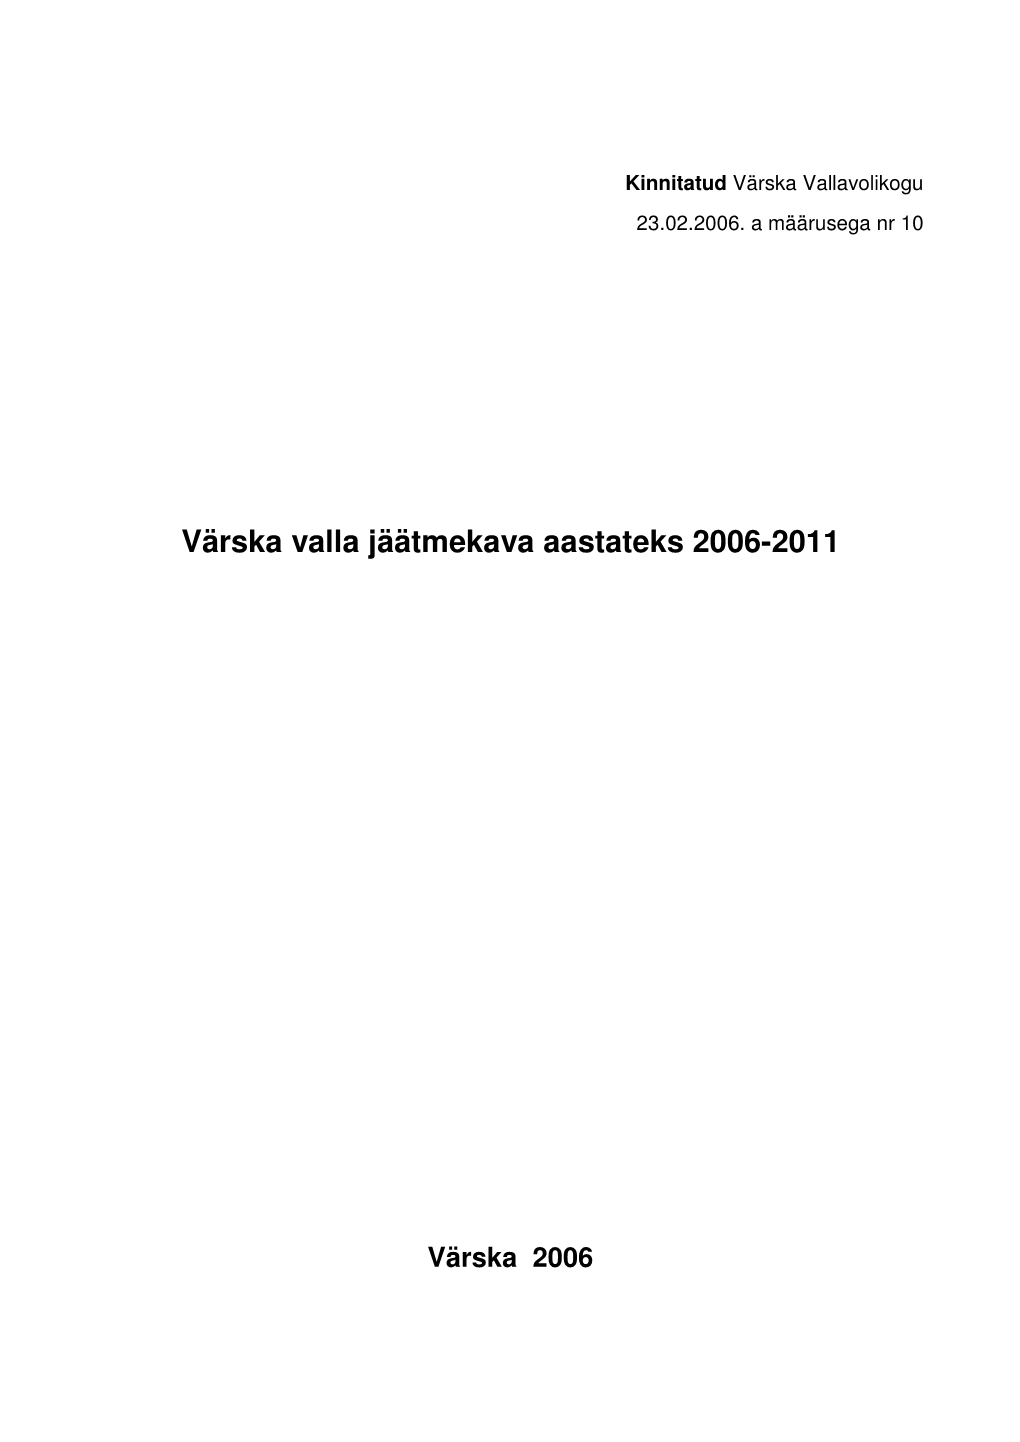 Värska Valla Jäätmekava Aastateks 2006-2011